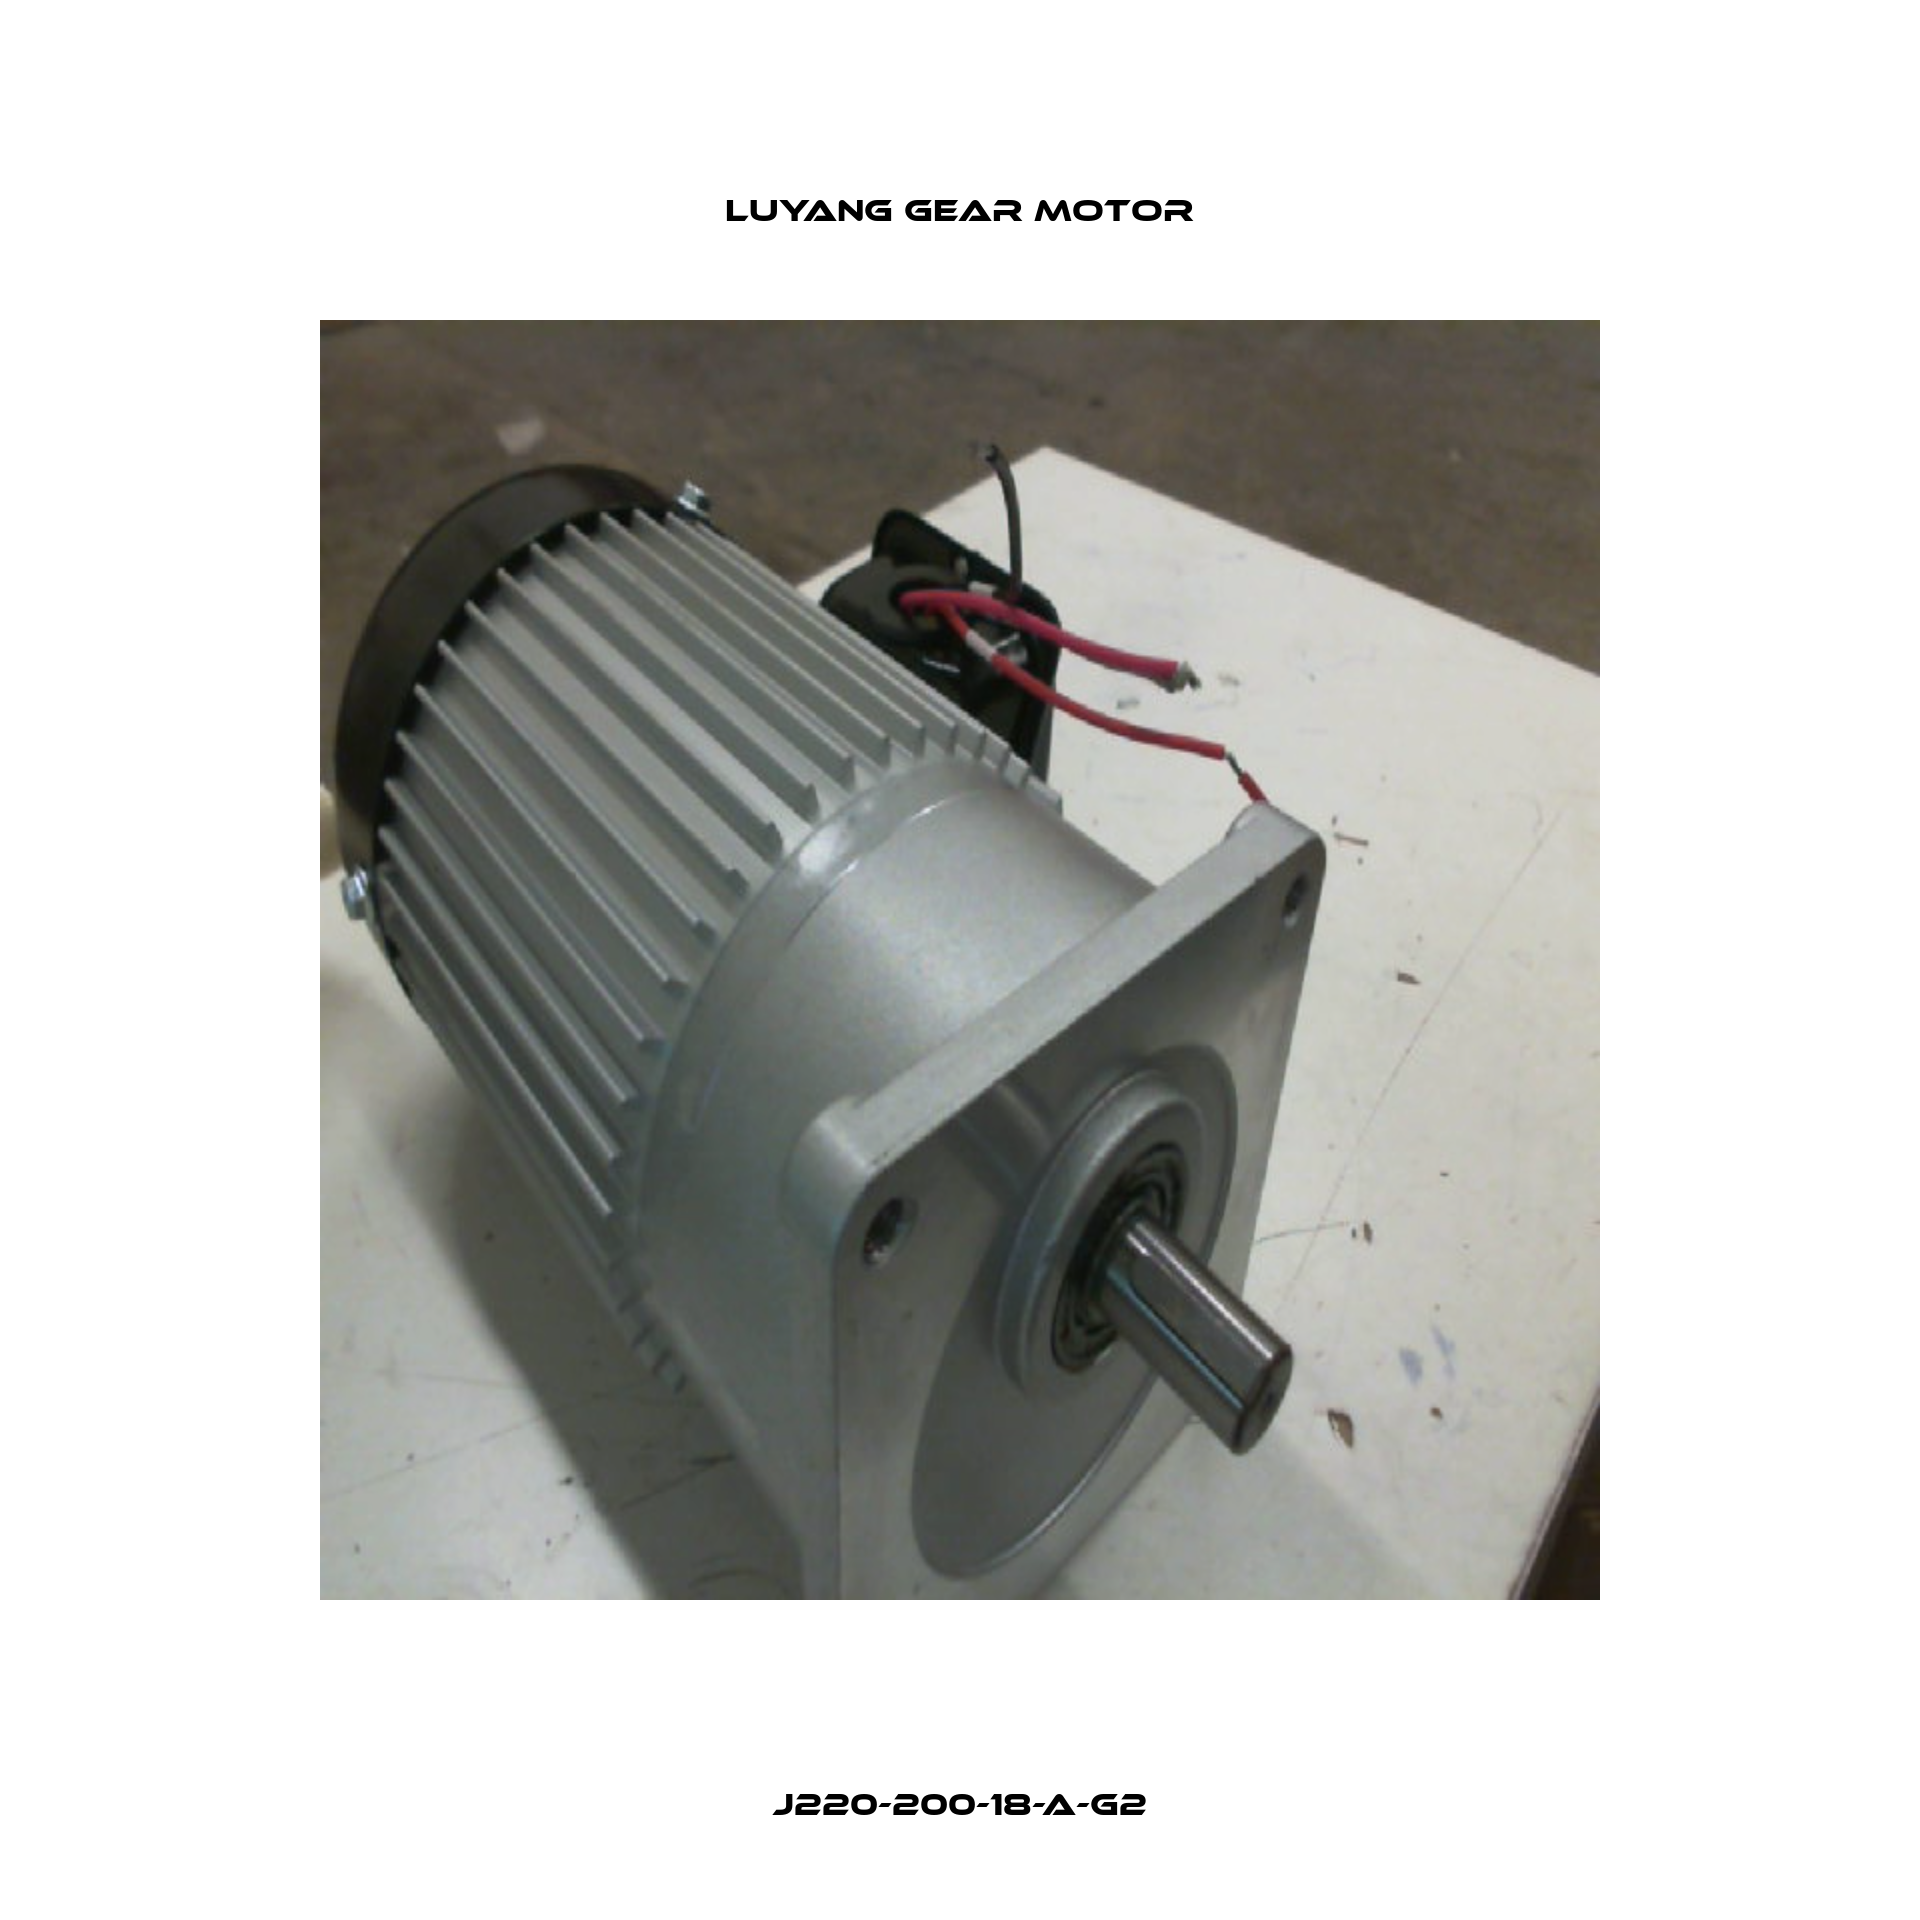 J220-200-18-A-G2 Luyang Gear Motor